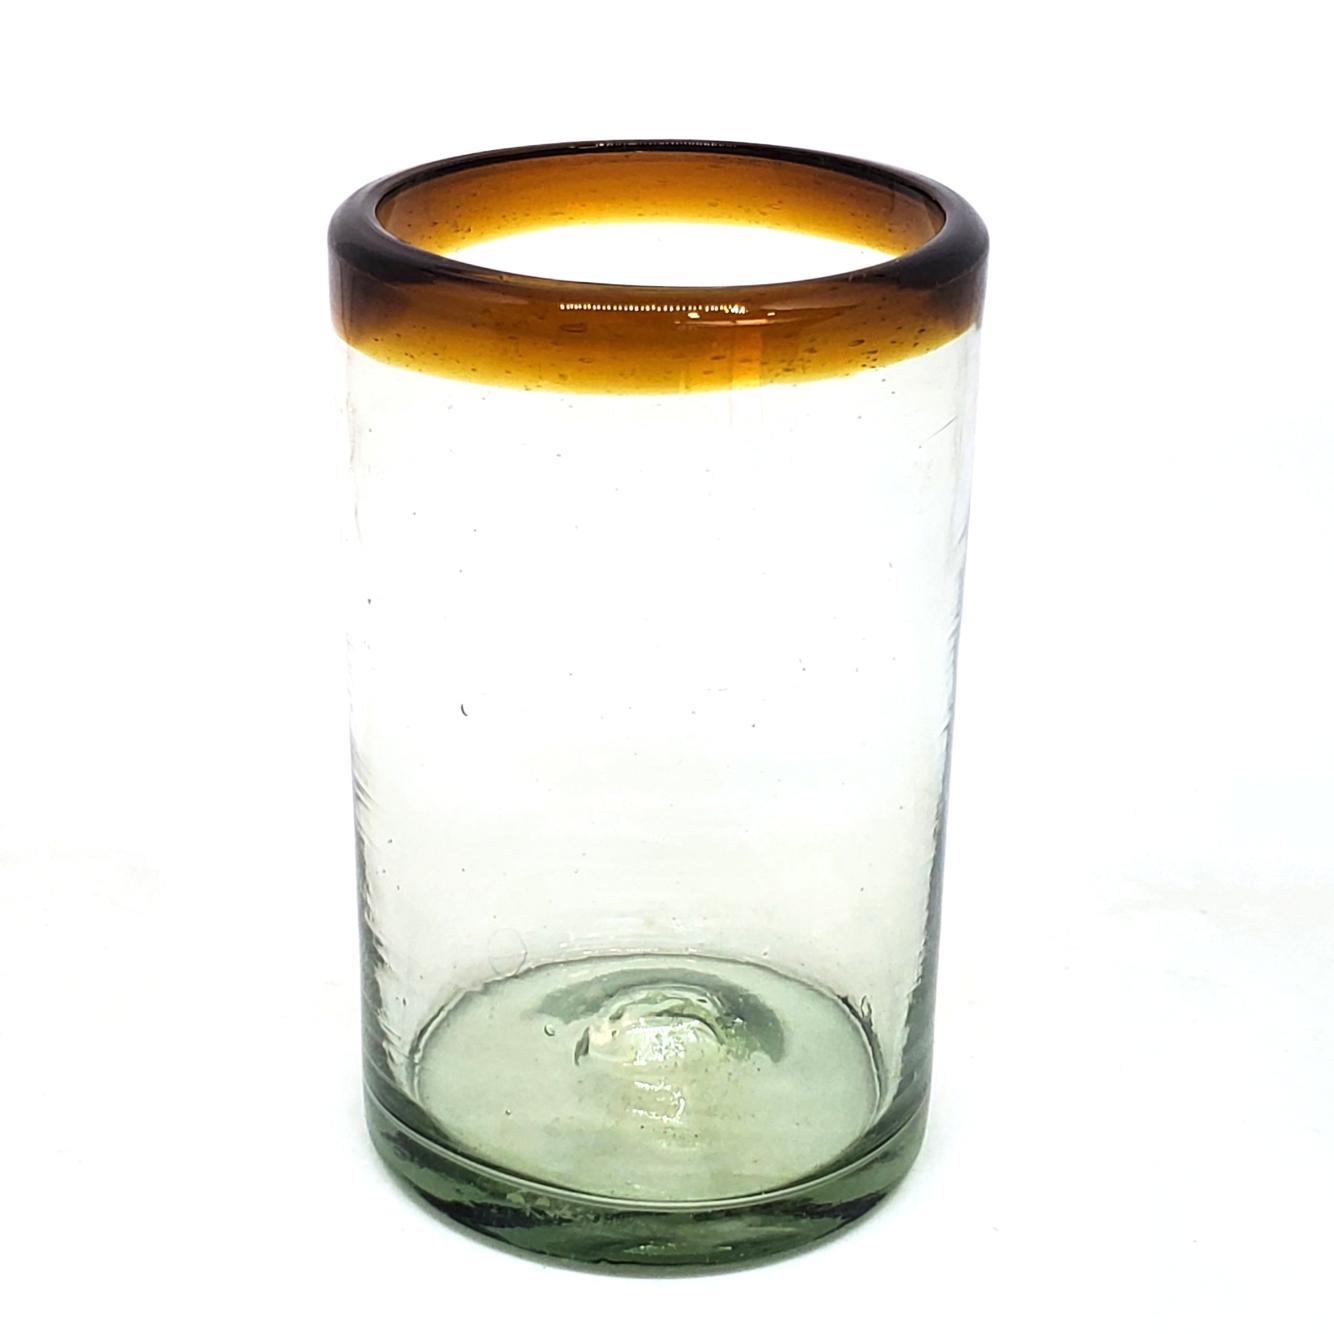 Vasos de Vidrio Soplado / Juego de 6 vasos grandes con borde color mbar / stos artesanales vasos le darn un toque clsico a su bebida favorita.